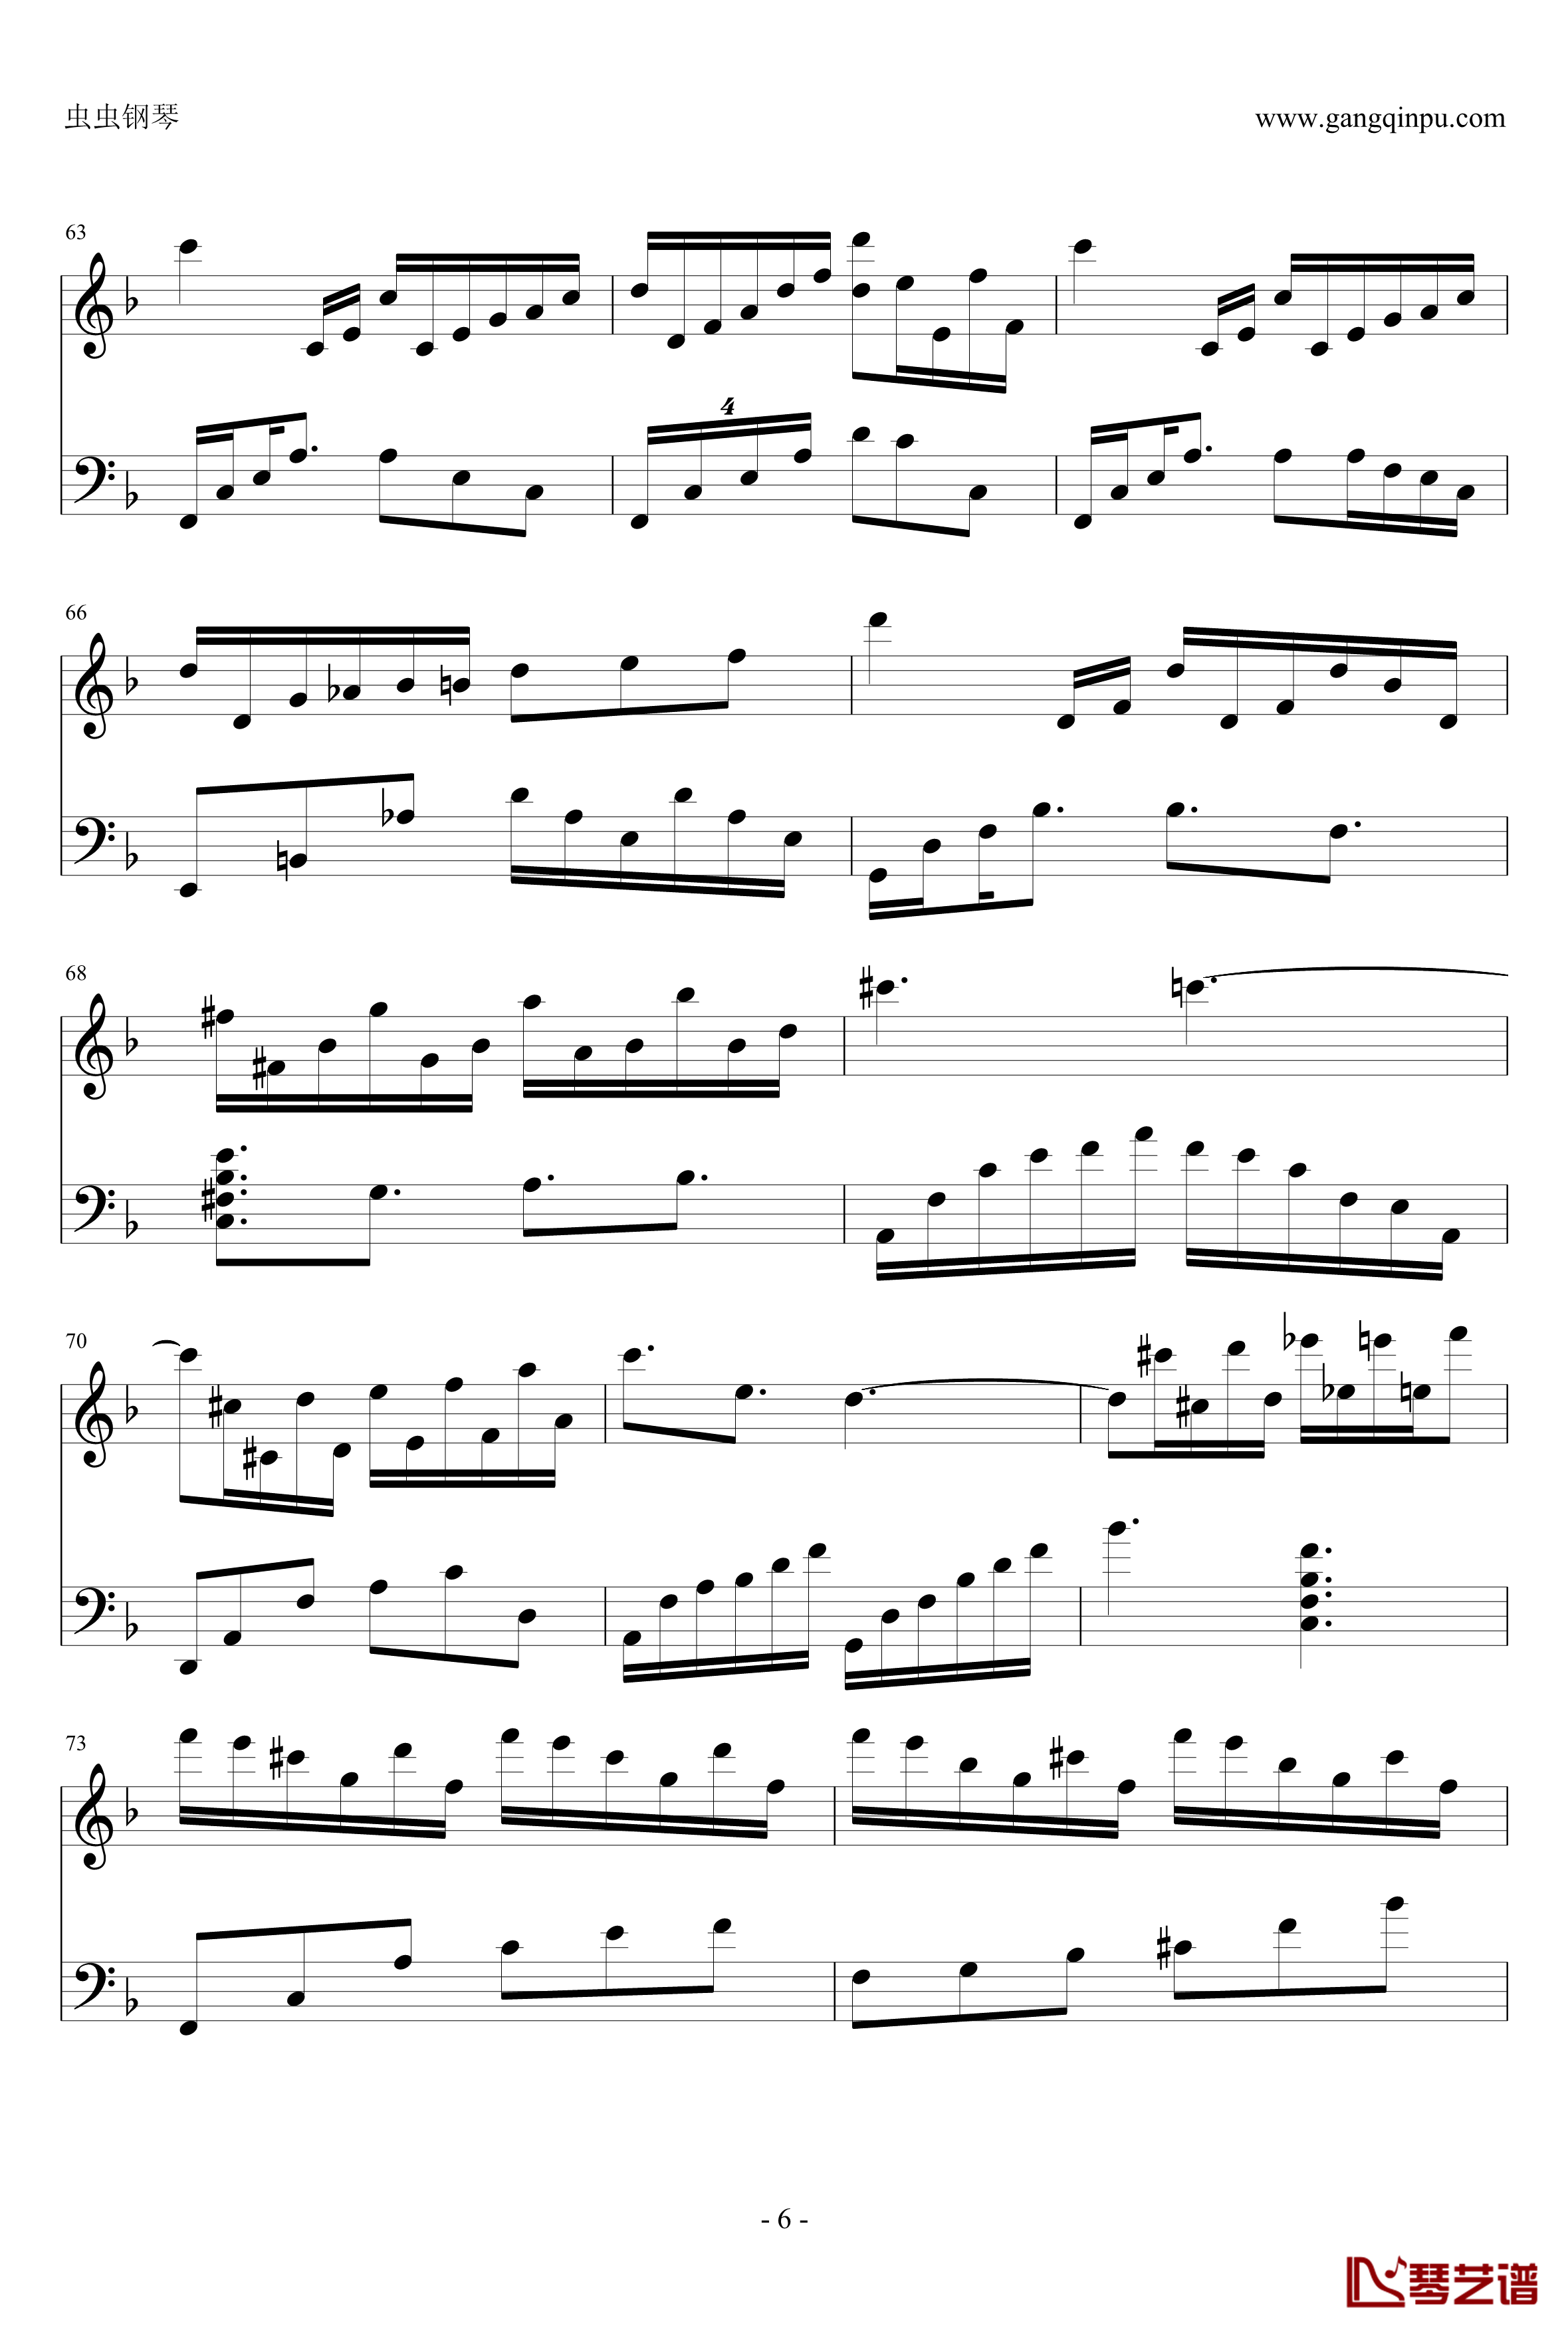 情归巴黎主题曲钢琴谱-theme from sabrina-John Williams6